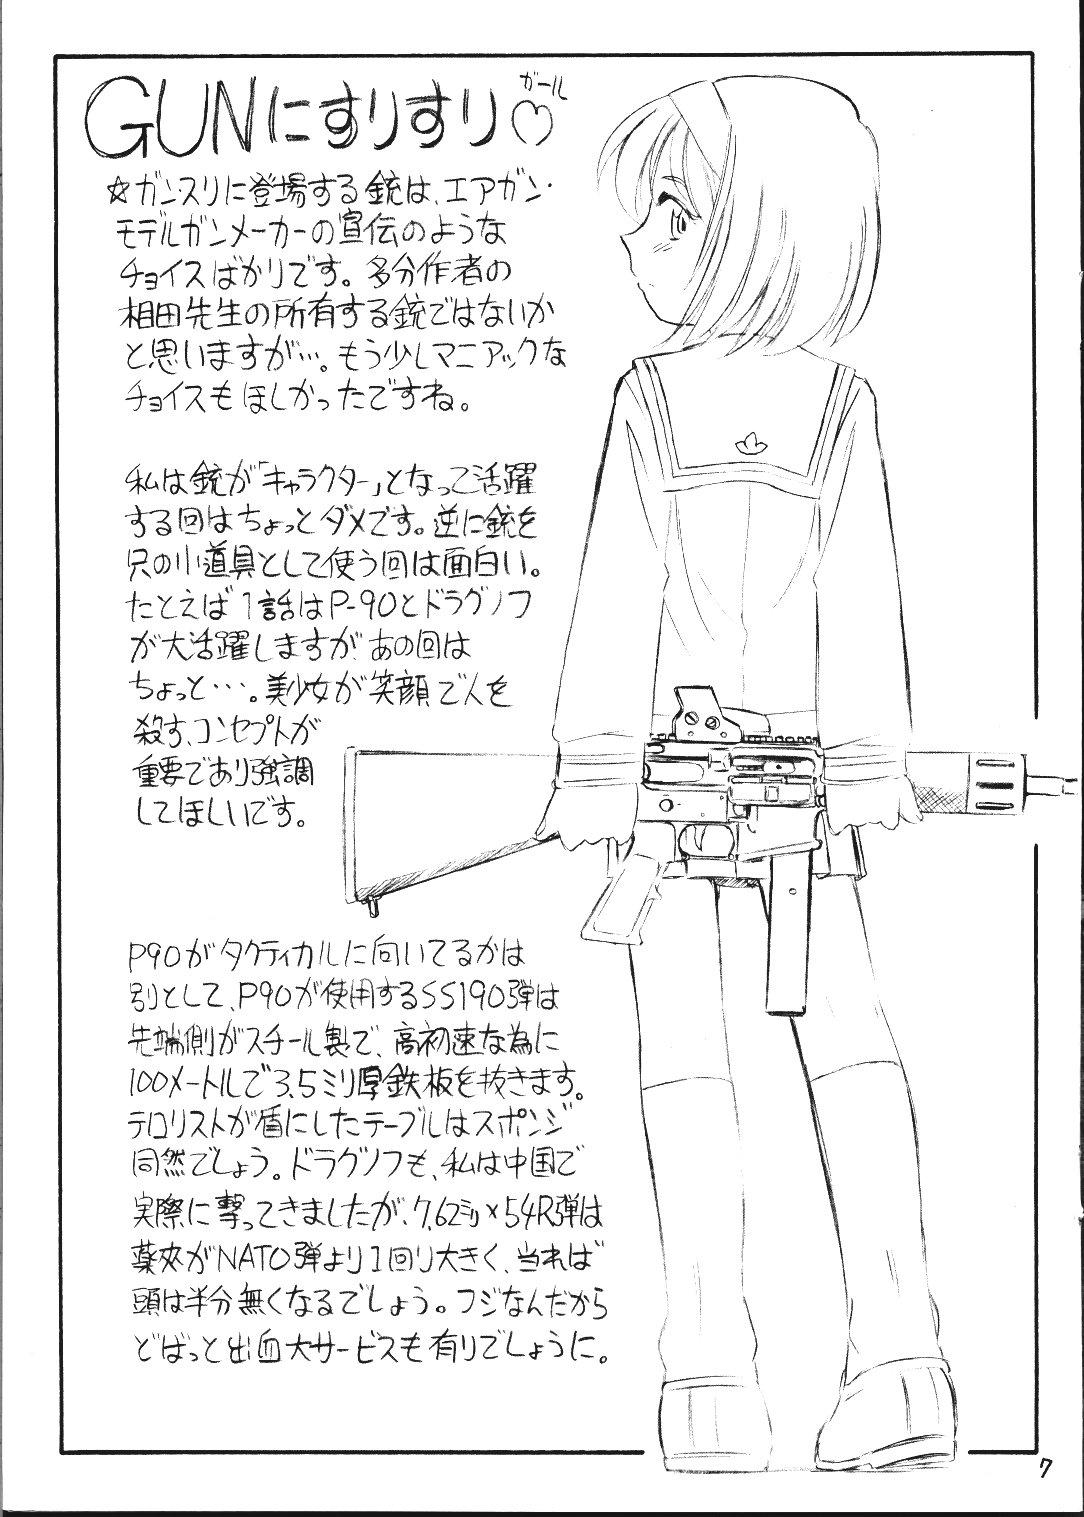 Novia Gunnisurisurisuru Girl - Gunslinger girl Sexy Whores - Page 7